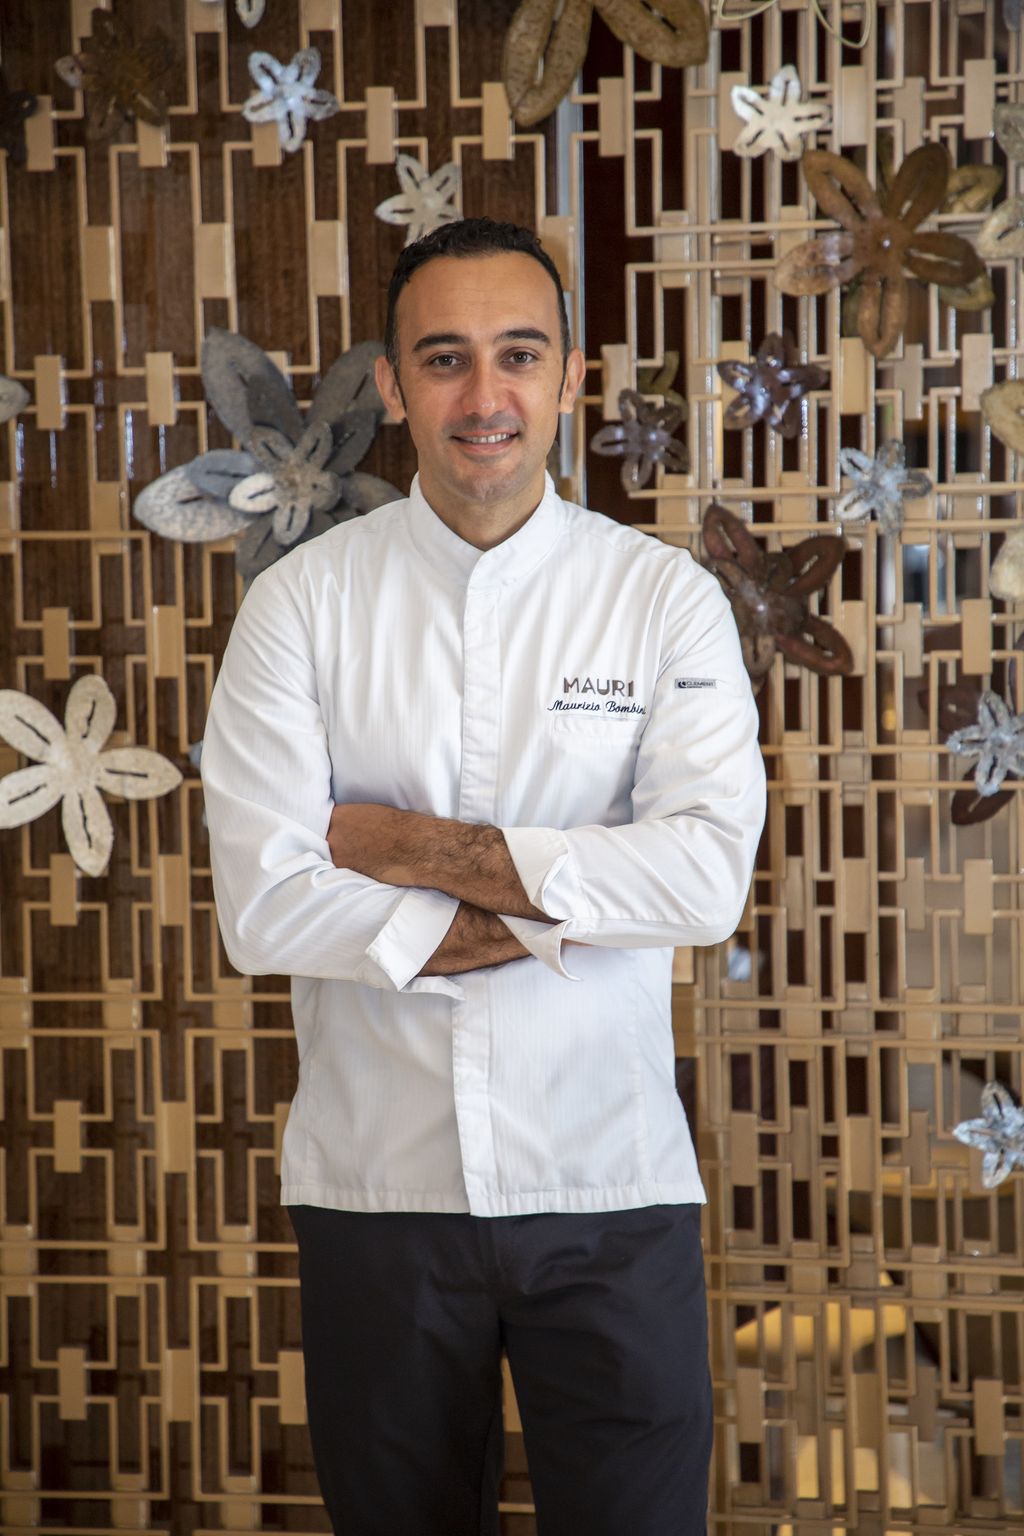 Chef Maurizio Bombini